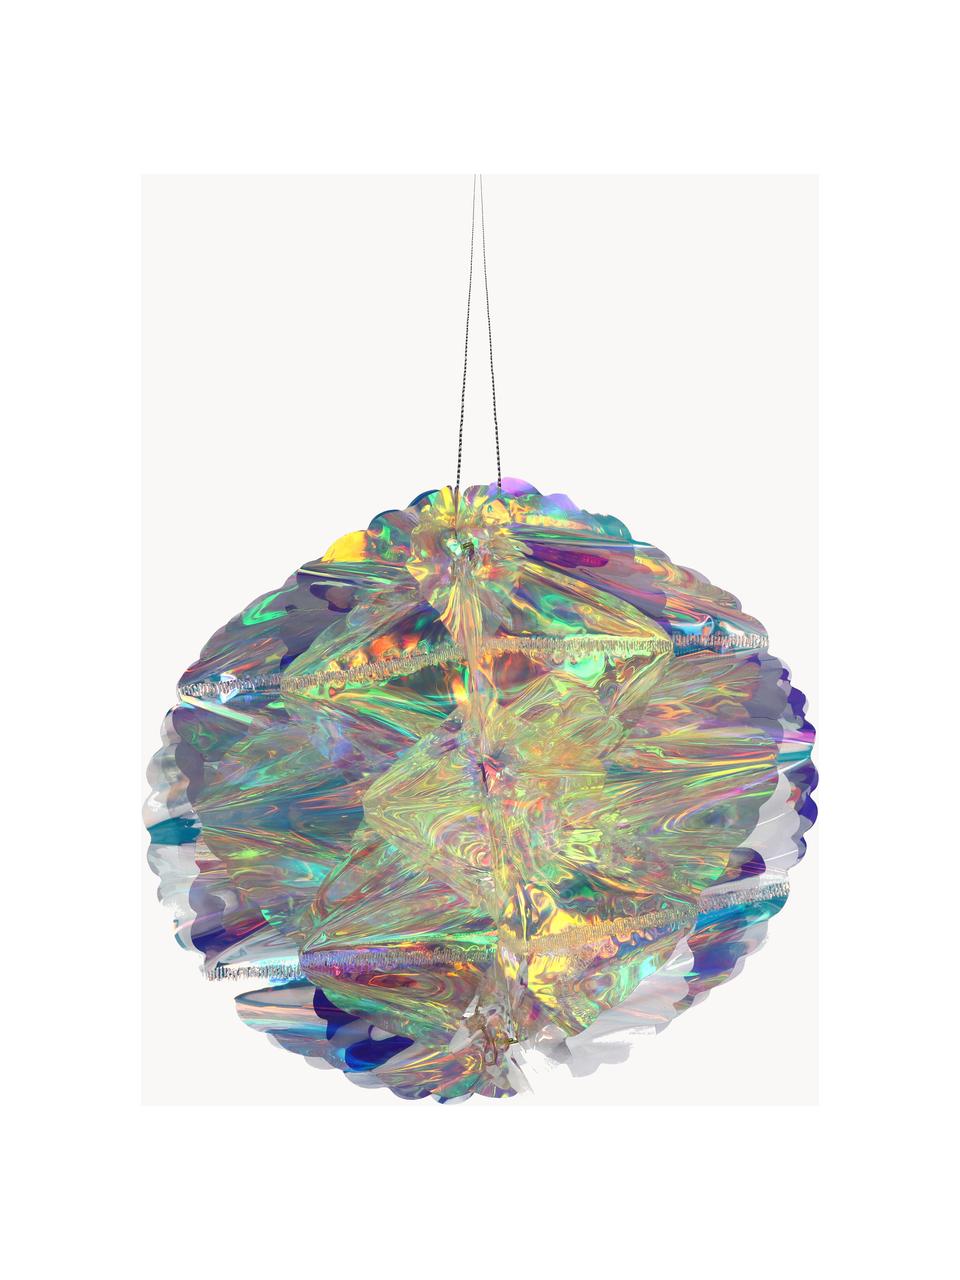 Boule de Noël Iridescent, Plastique, Chrome, transparent, irisé, Ø 20 cm